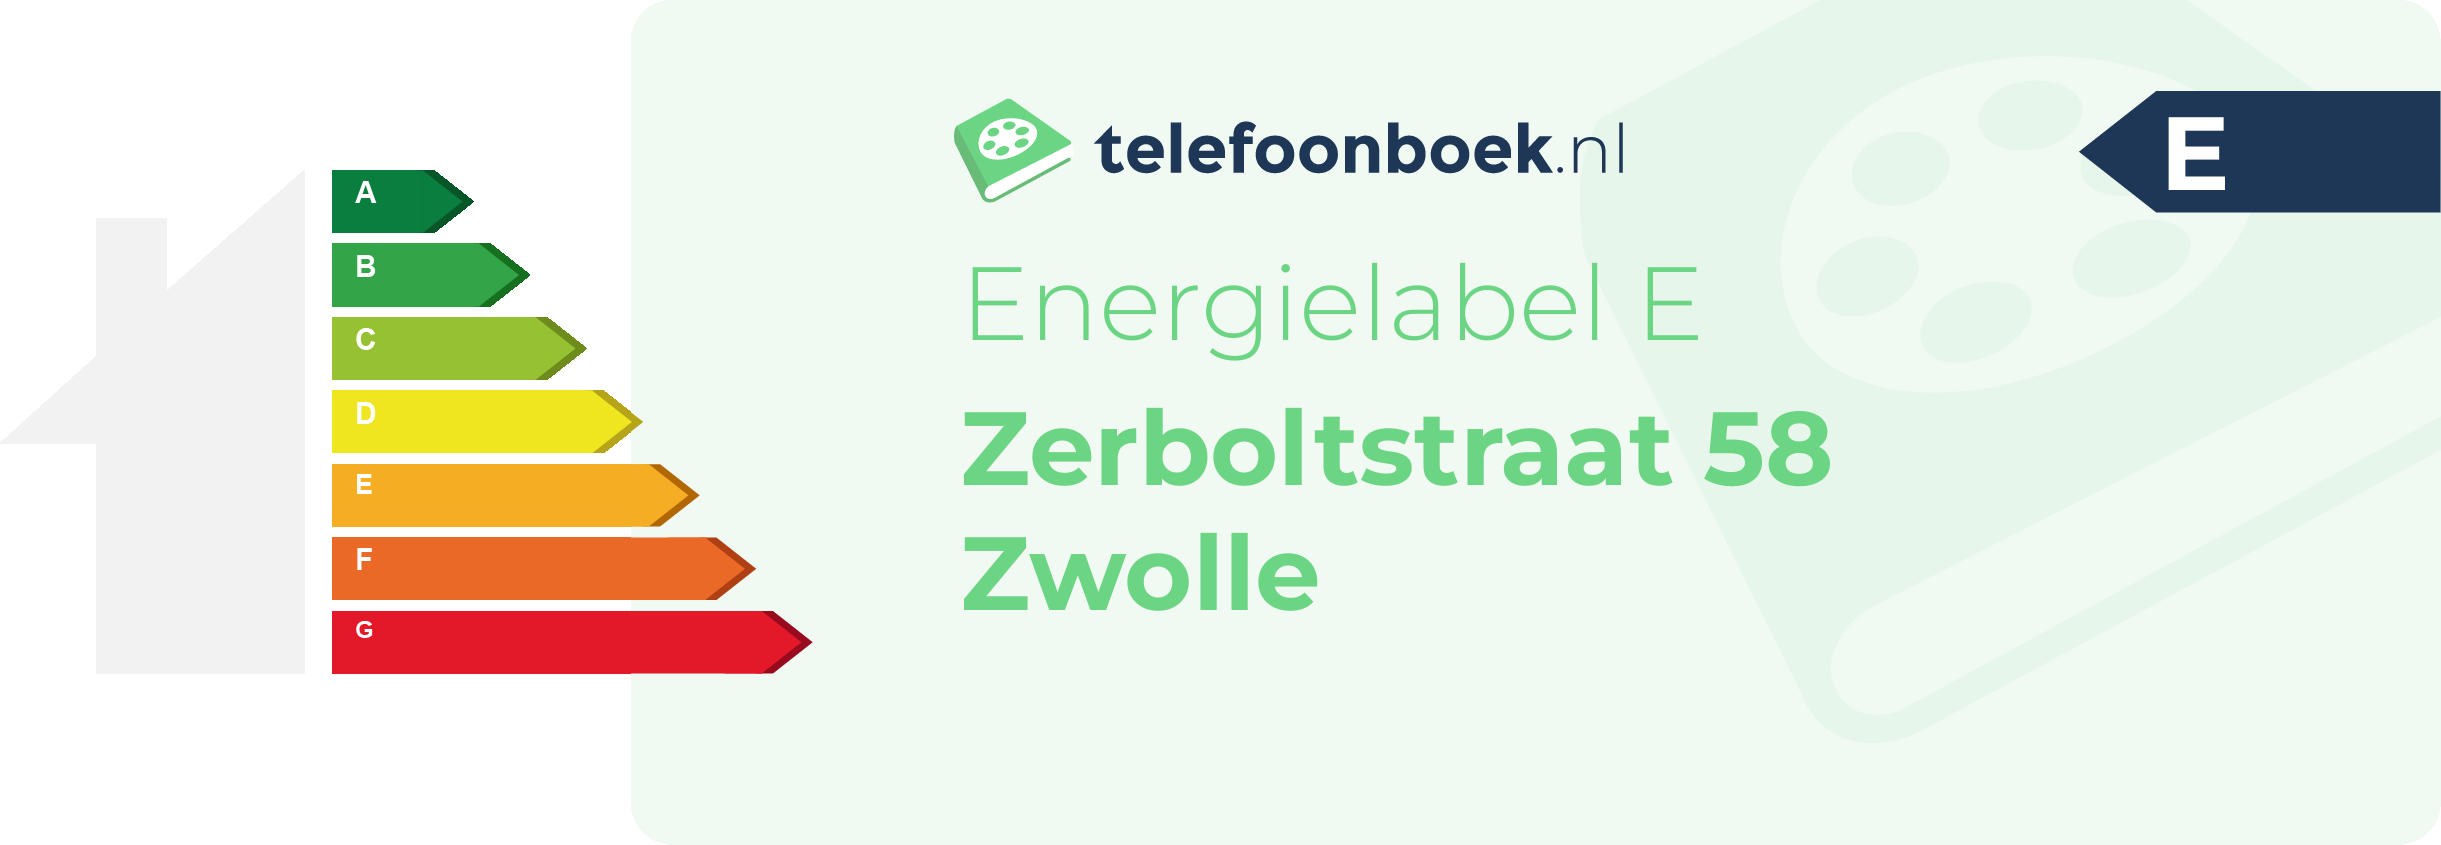 Energielabel Zerboltstraat 58 Zwolle